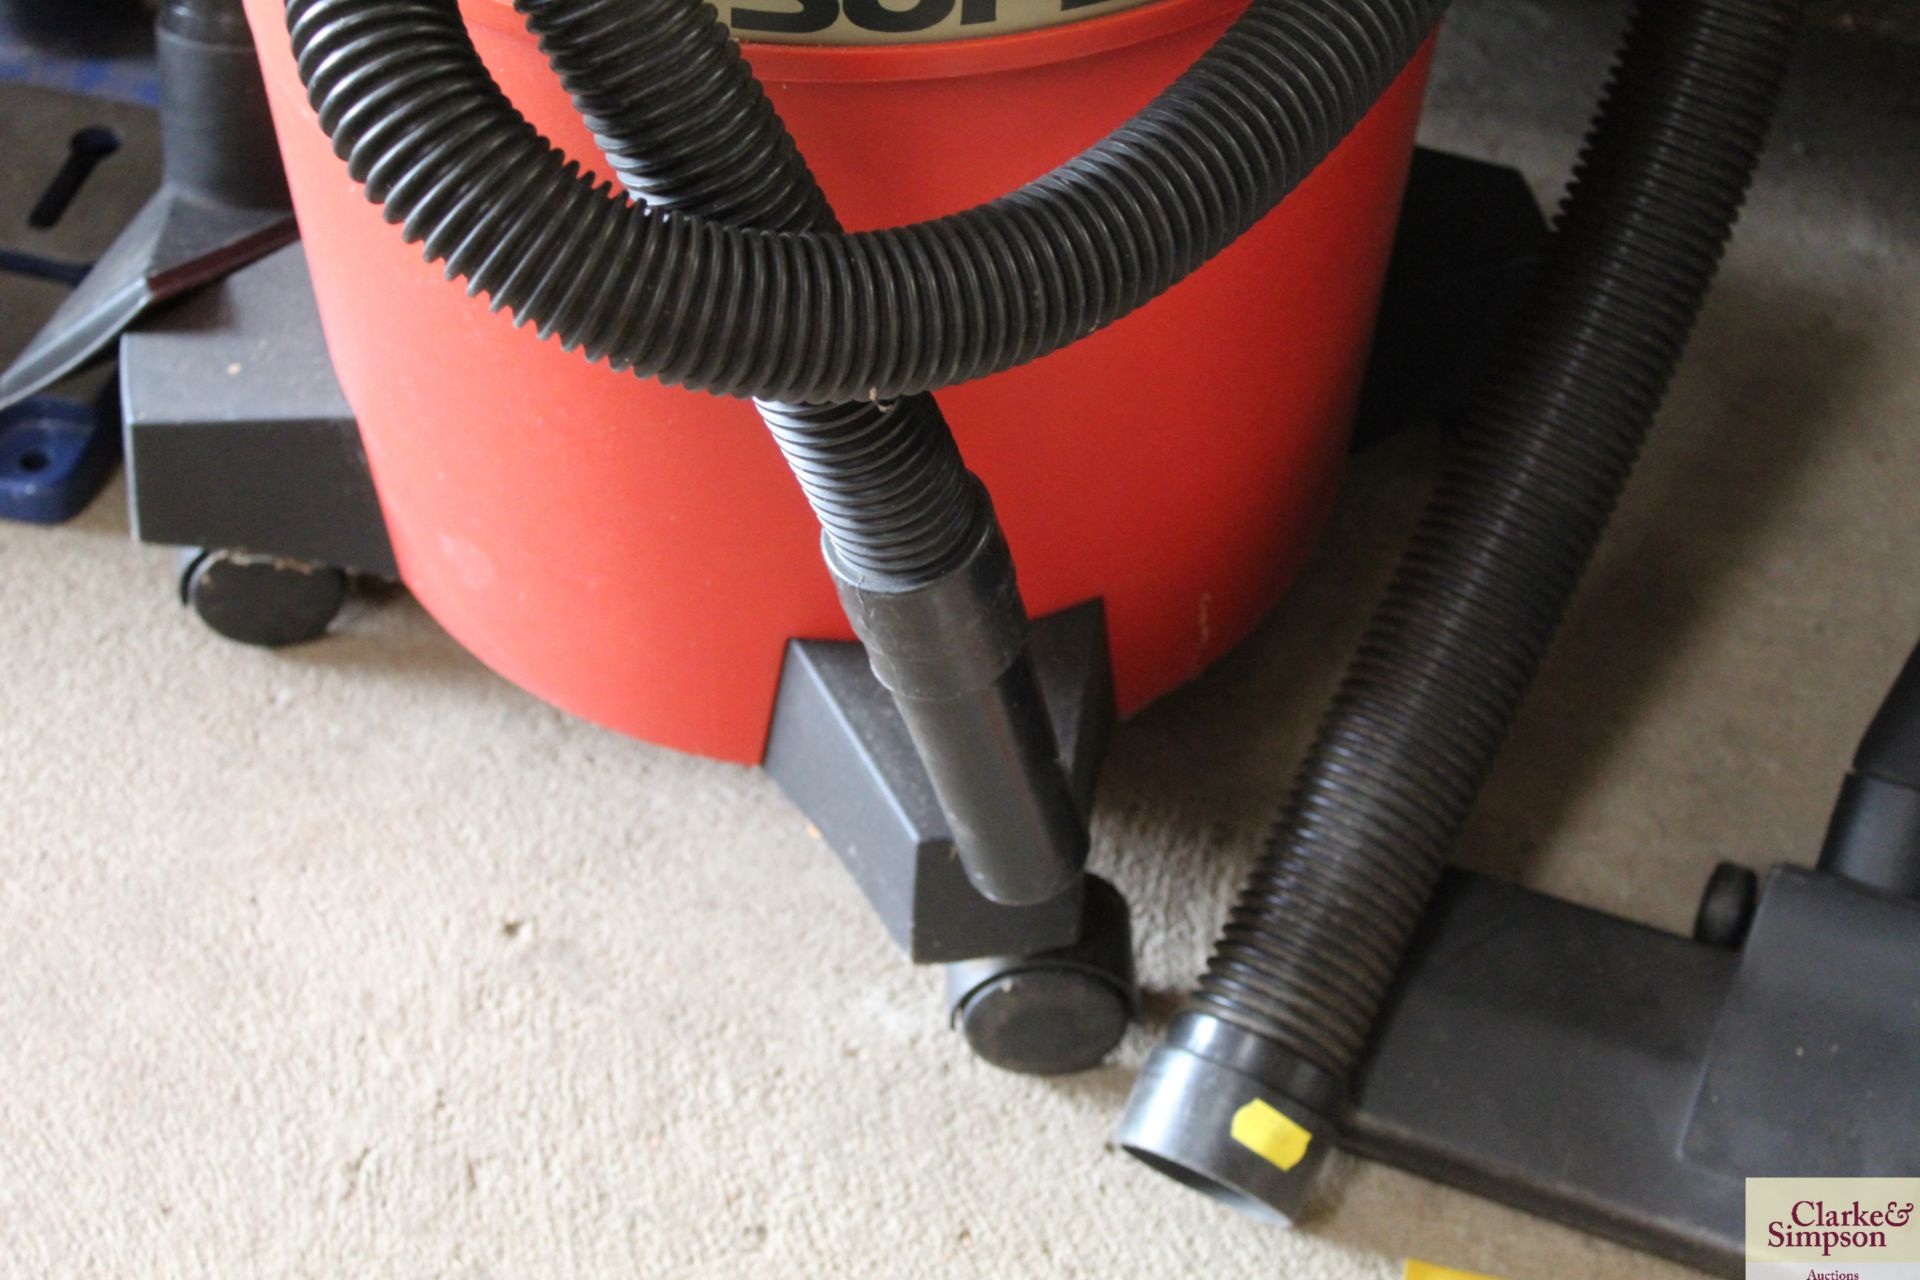 Aquavac Super40 vacuum cleaner. - Image 4 of 4